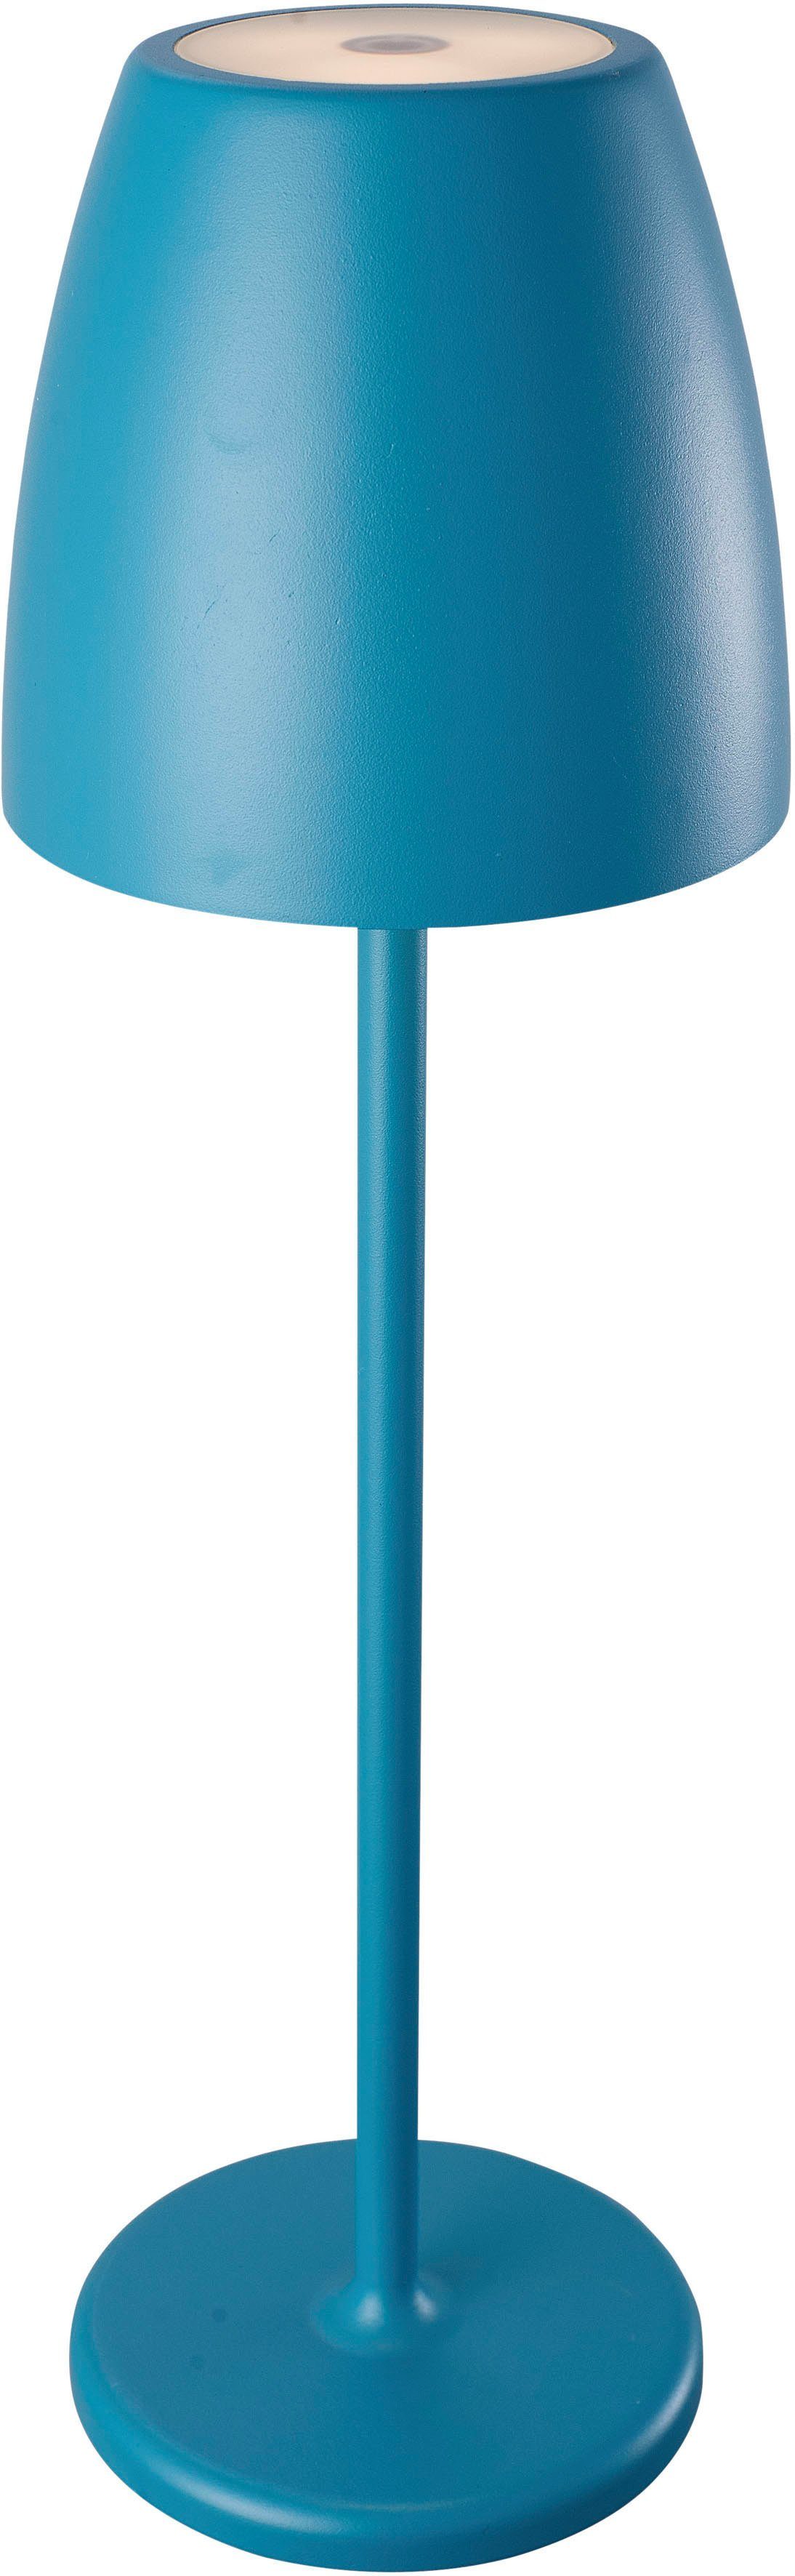 niermann LED Tischleuchte MEGATRON TAVOLA in Design Elegantes Farben Akku LED Helligkeitsstufen, fest mehrere integriert, TL 2W-200lm/827 fünftrendigen Petrol, IP54